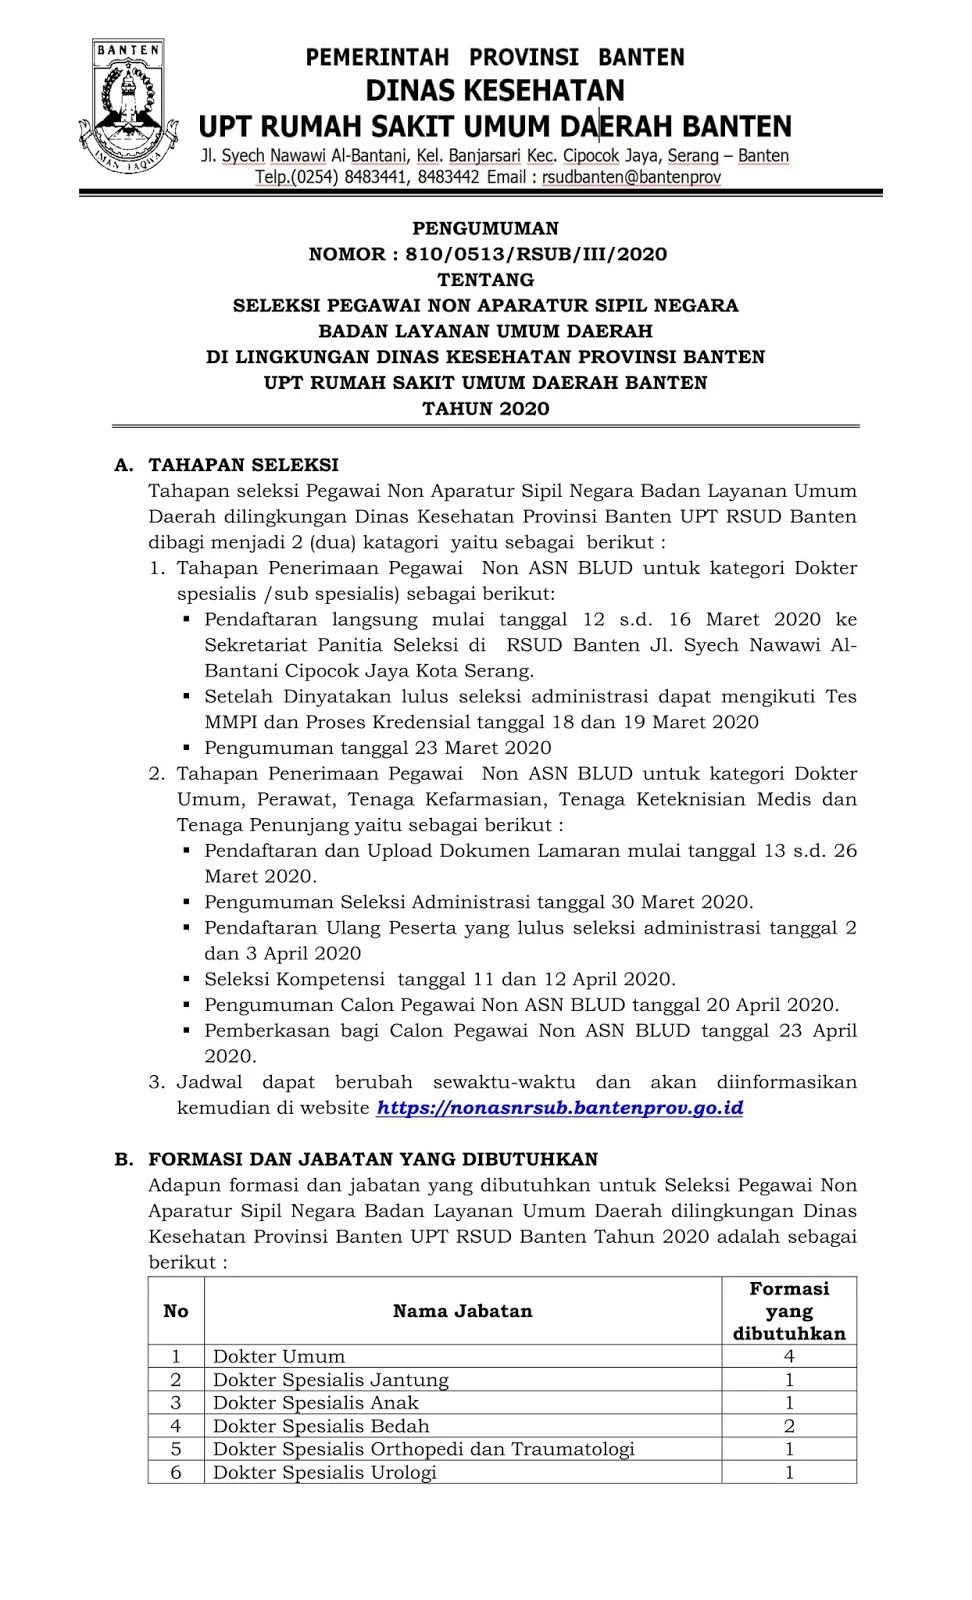 Rekrutmen Pegawai Non PNS BLUD Dinas Kesehatan UPT RSUD Banten Bulan Maret 2020